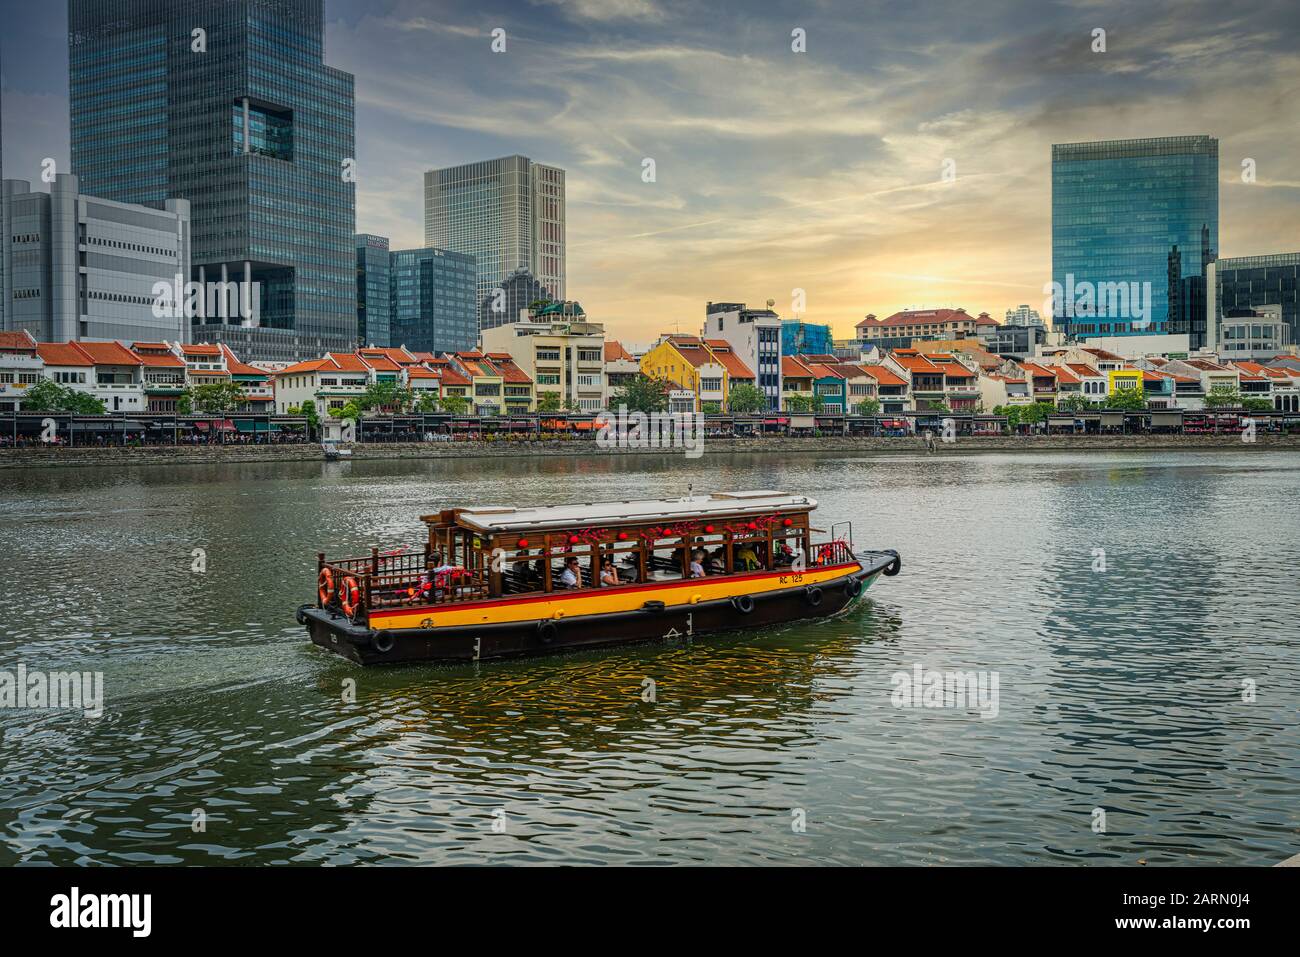 Singapur. Januar 2020. Ein Boot auf dem Fluss Singapur mit typischen Ladenhäusern im Hintergrund Stockfoto